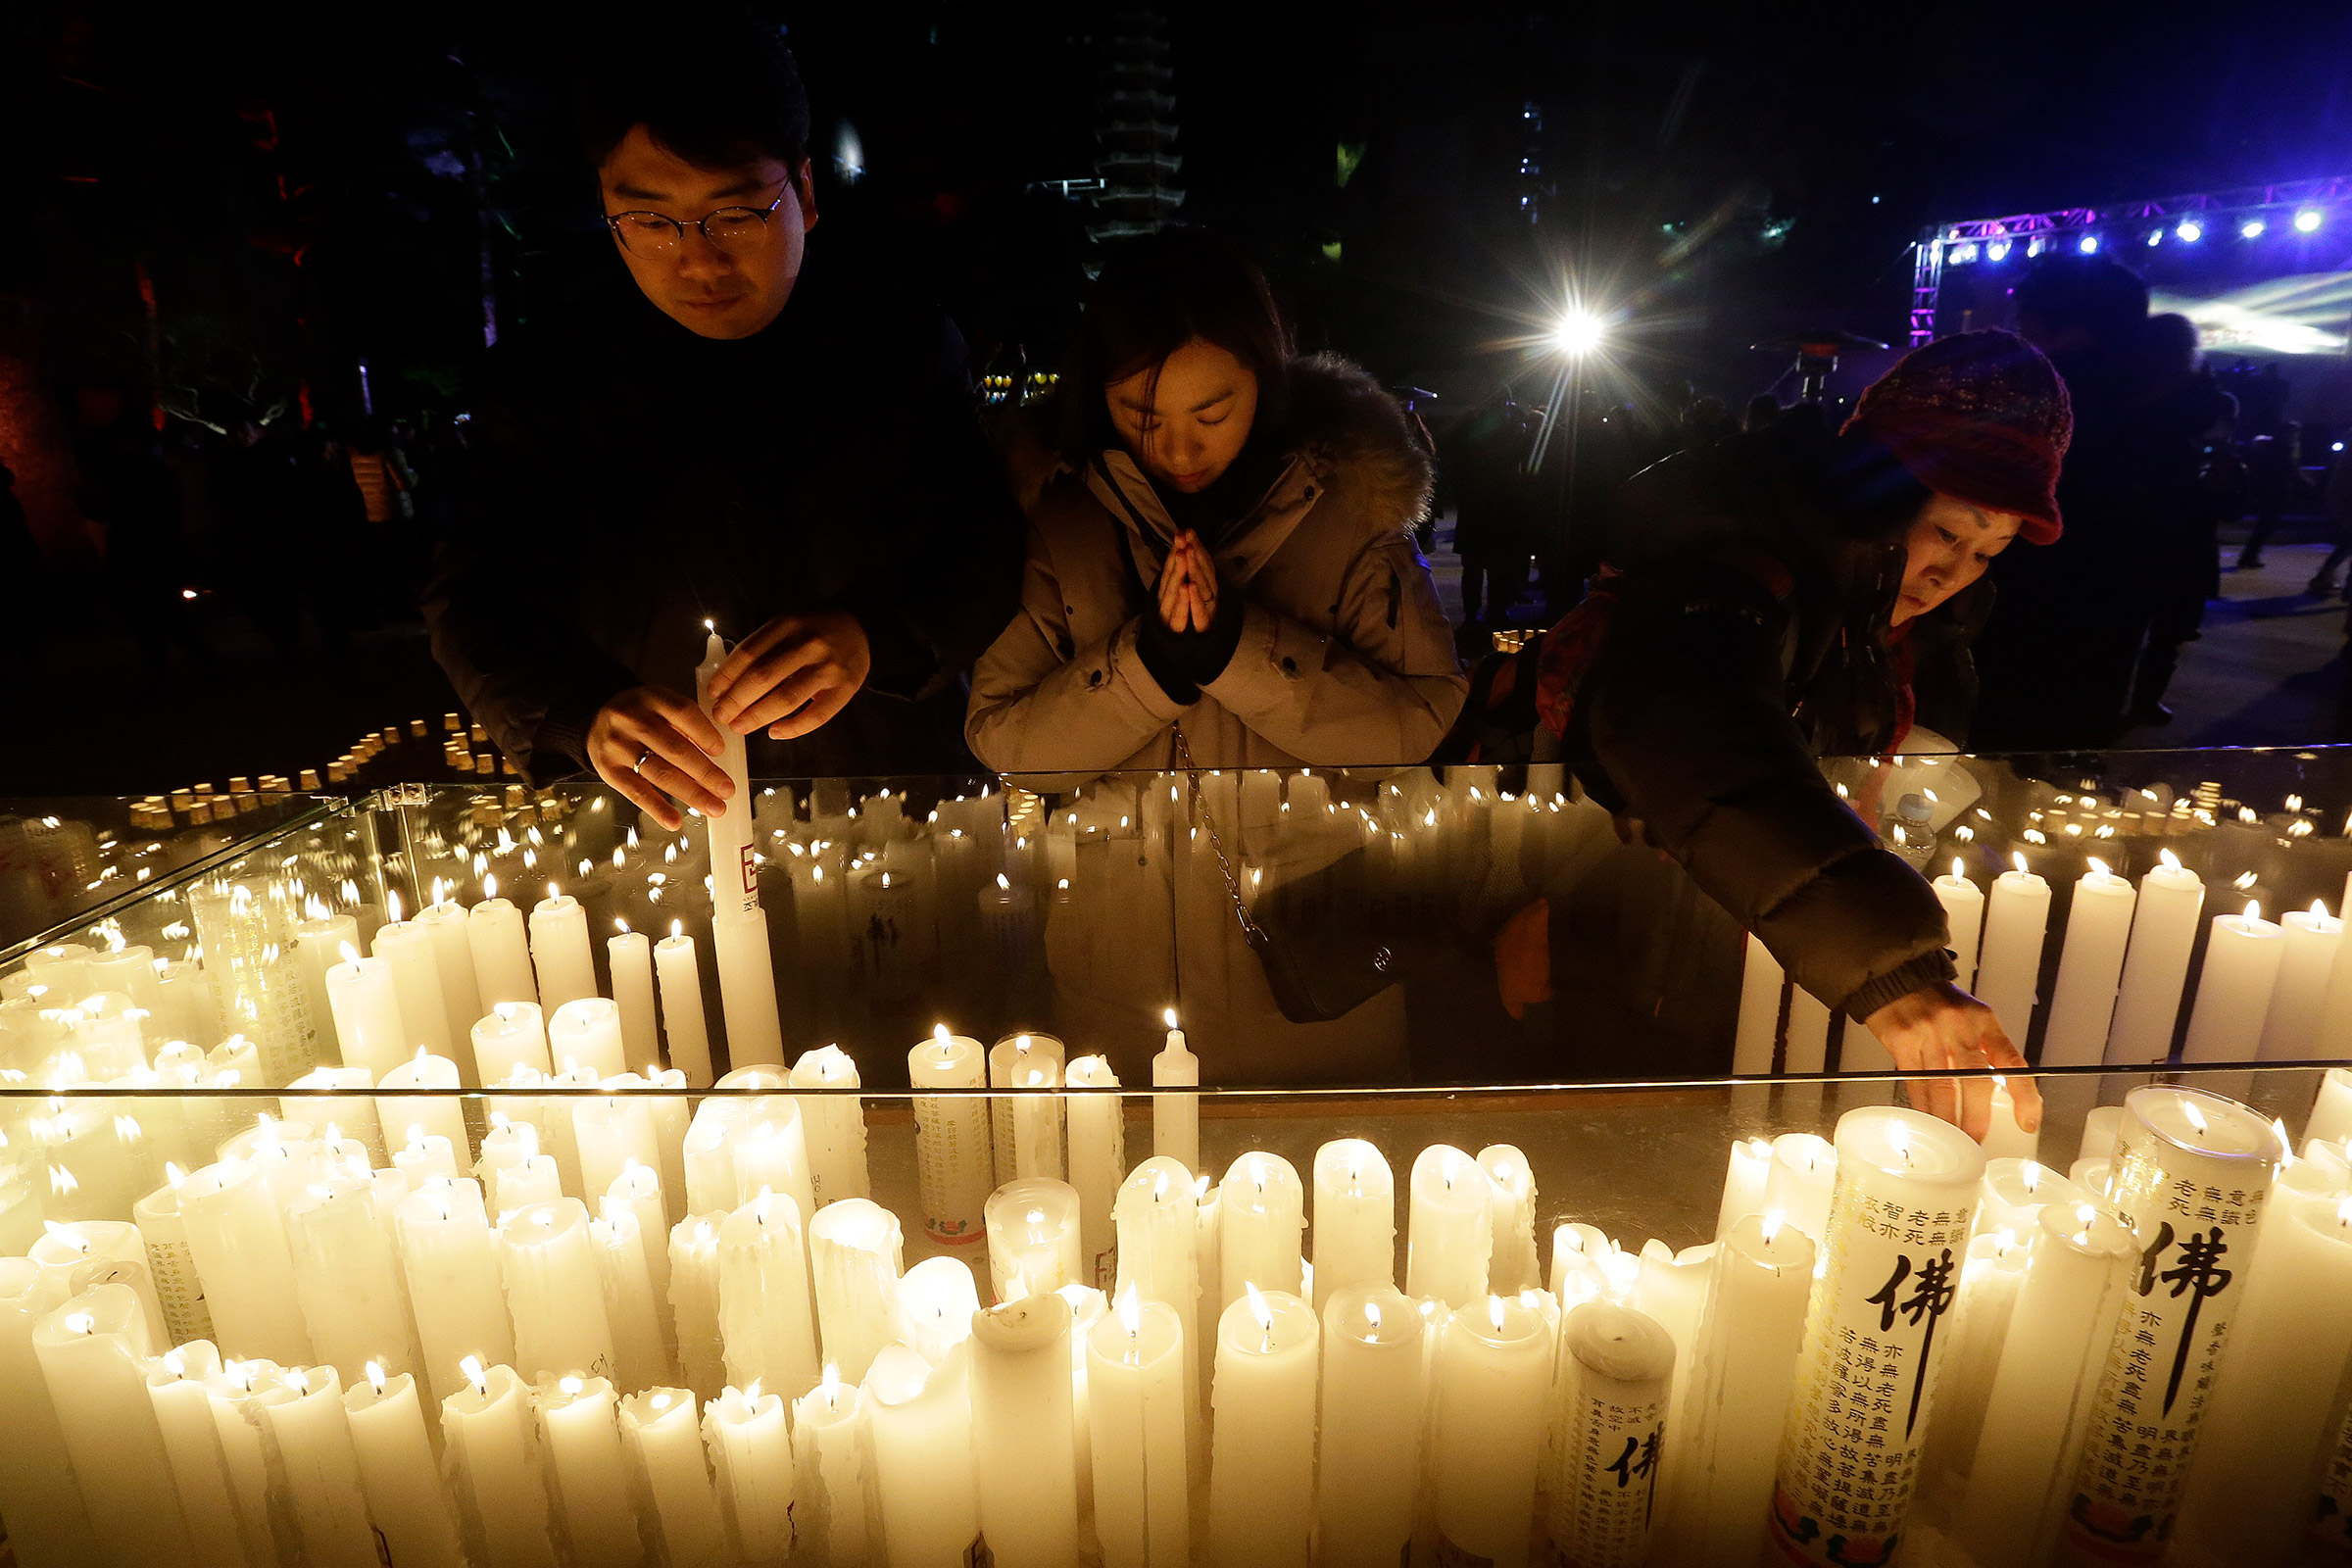 Южная Корея. Буддисты устанавливают свечи в храме во время празднования Нового года в Сеуле
